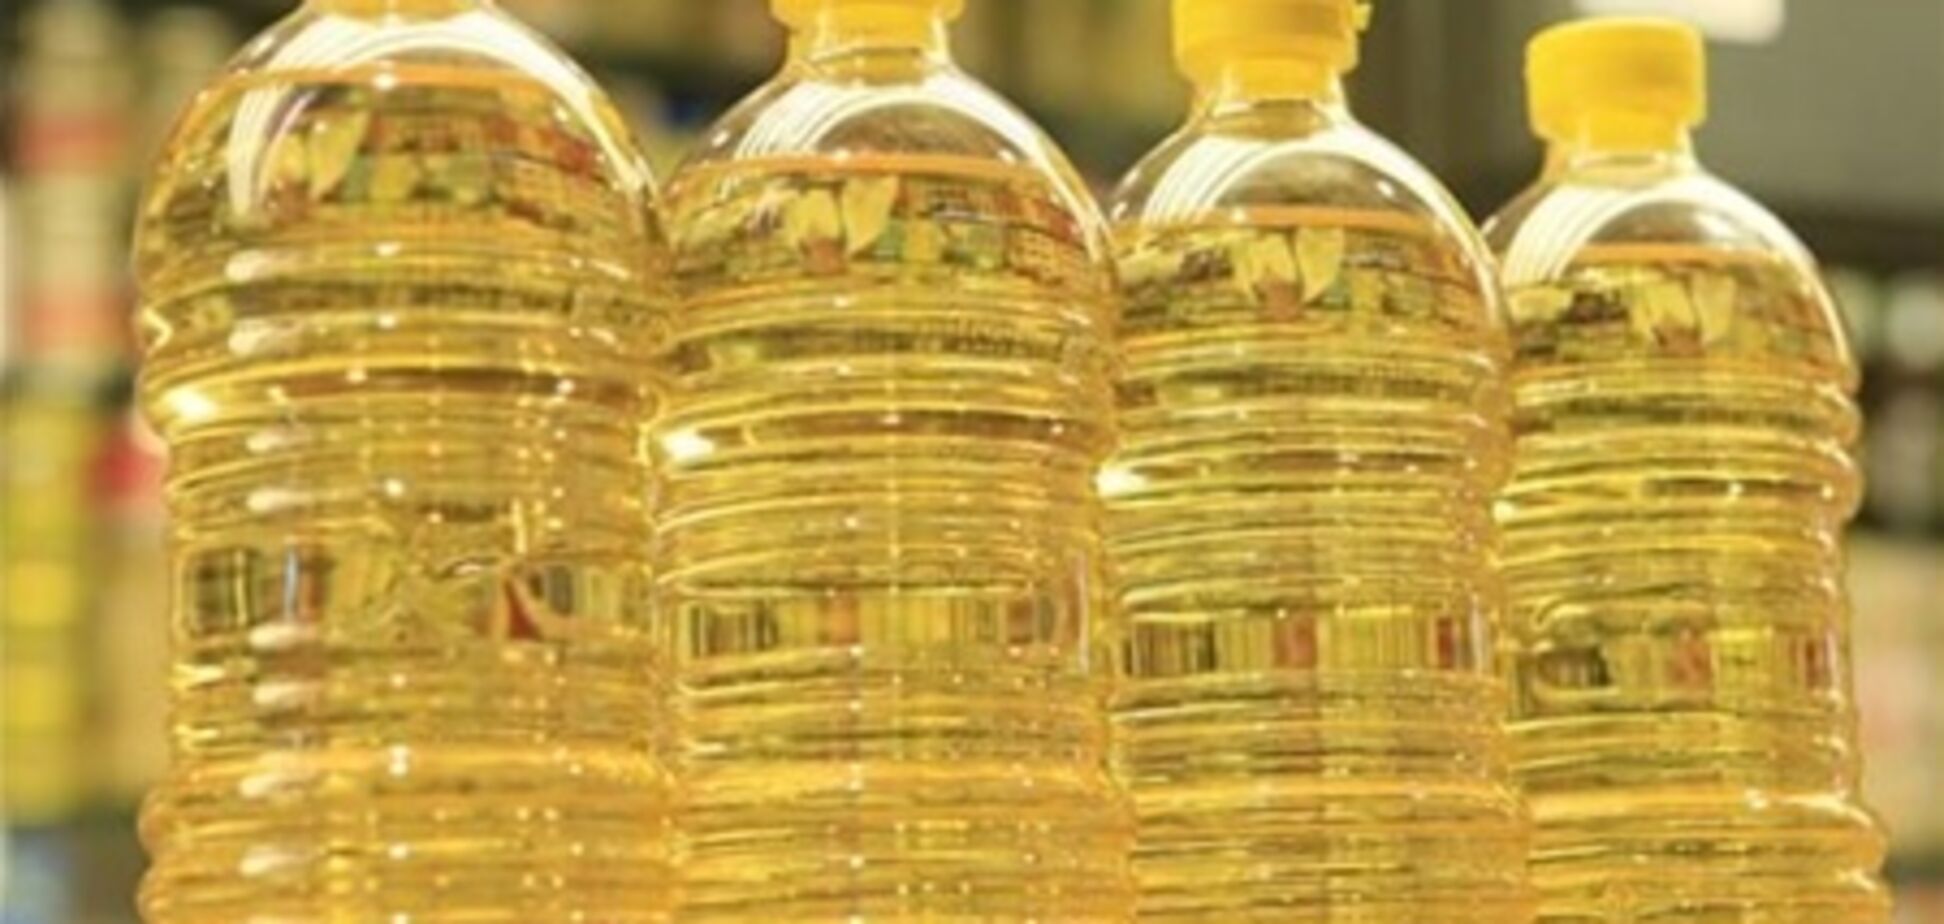 Подсолнечное масло может подешеветь на 3-5 гривен